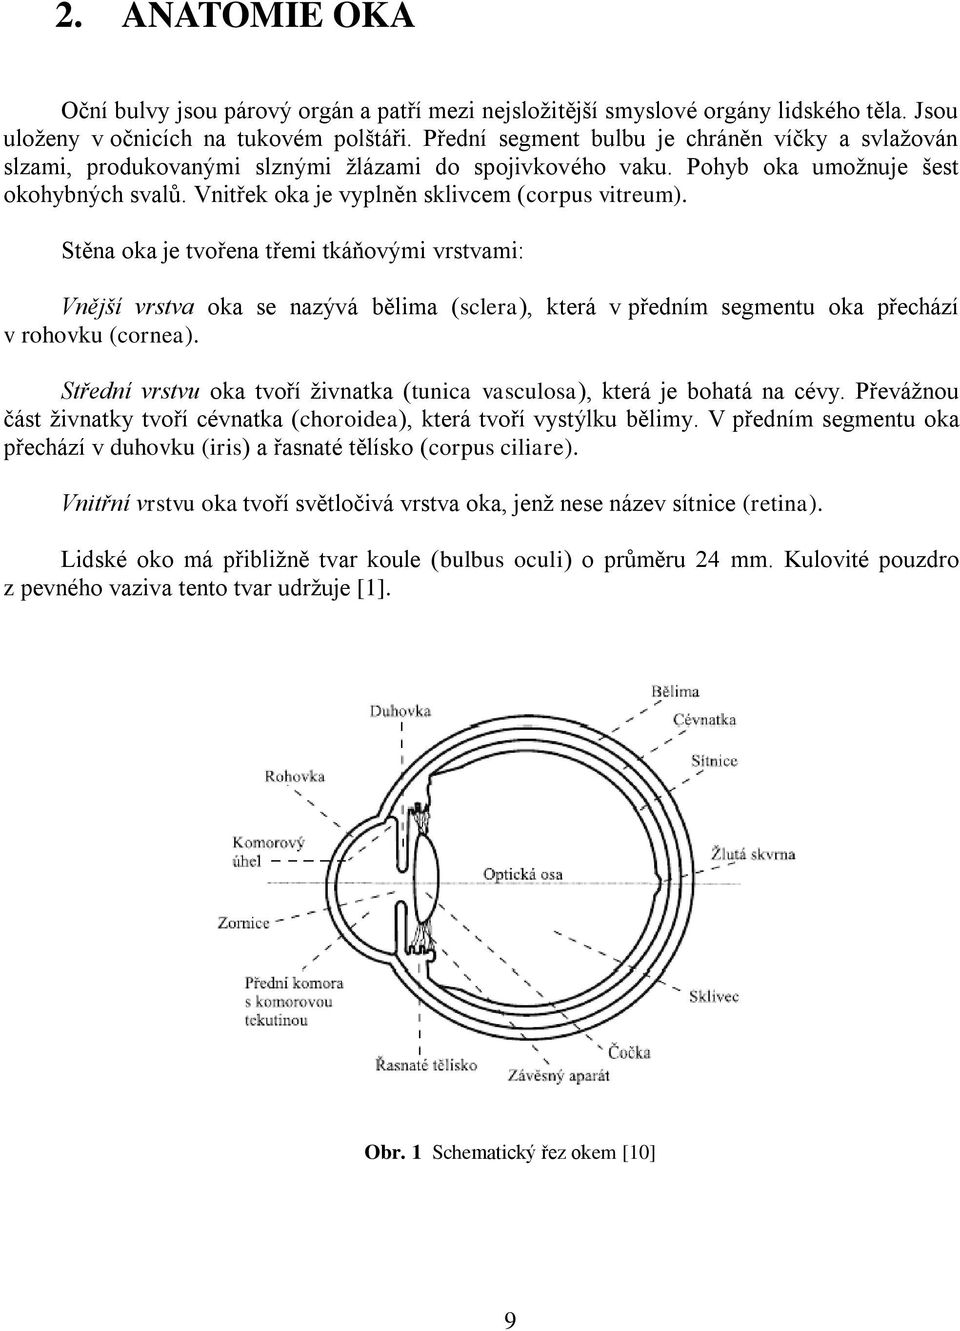 Vnitřek oka je vyplněn sklivcem (corpus vitreum). Stěna oka je tvořena třemi tkáňovými vrstvami: Vnější vrstva oka se nazývá bělima (sclera), která v předním segmentu oka přechází v rohovku (cornea).